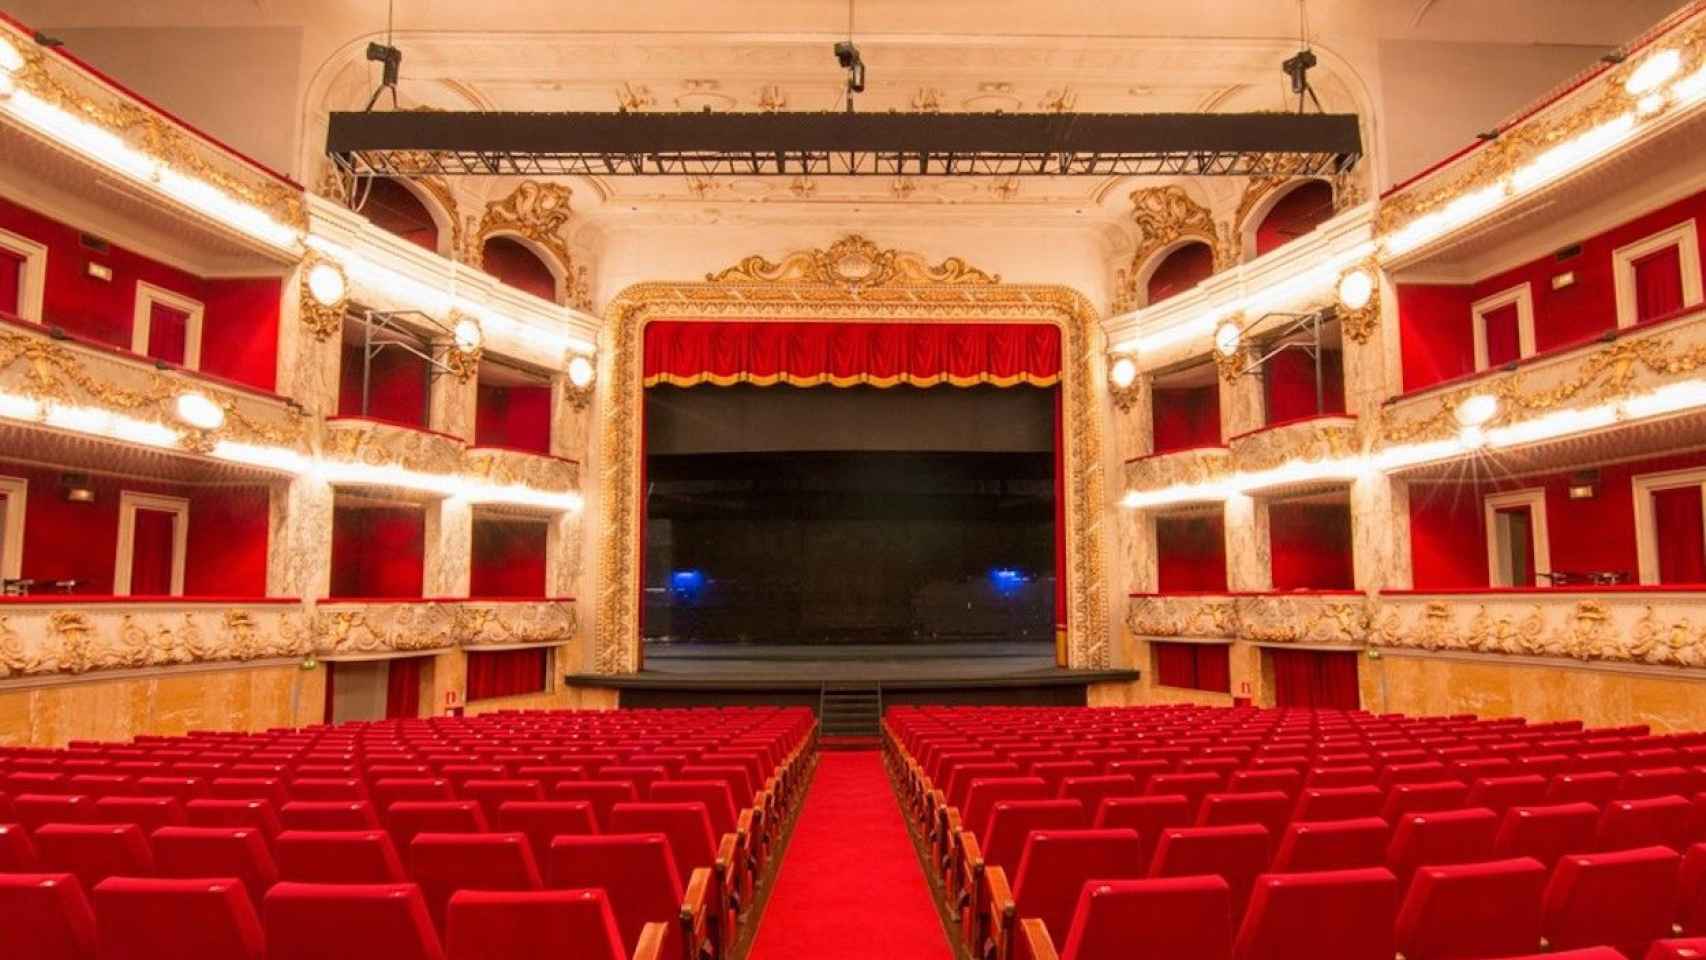 El teatro Tivoli en Barcelona, uno de los que podrían quedar exonerados de impuestos municipales si se llega a cabo la petición de Cs / GRUP BALAÑA